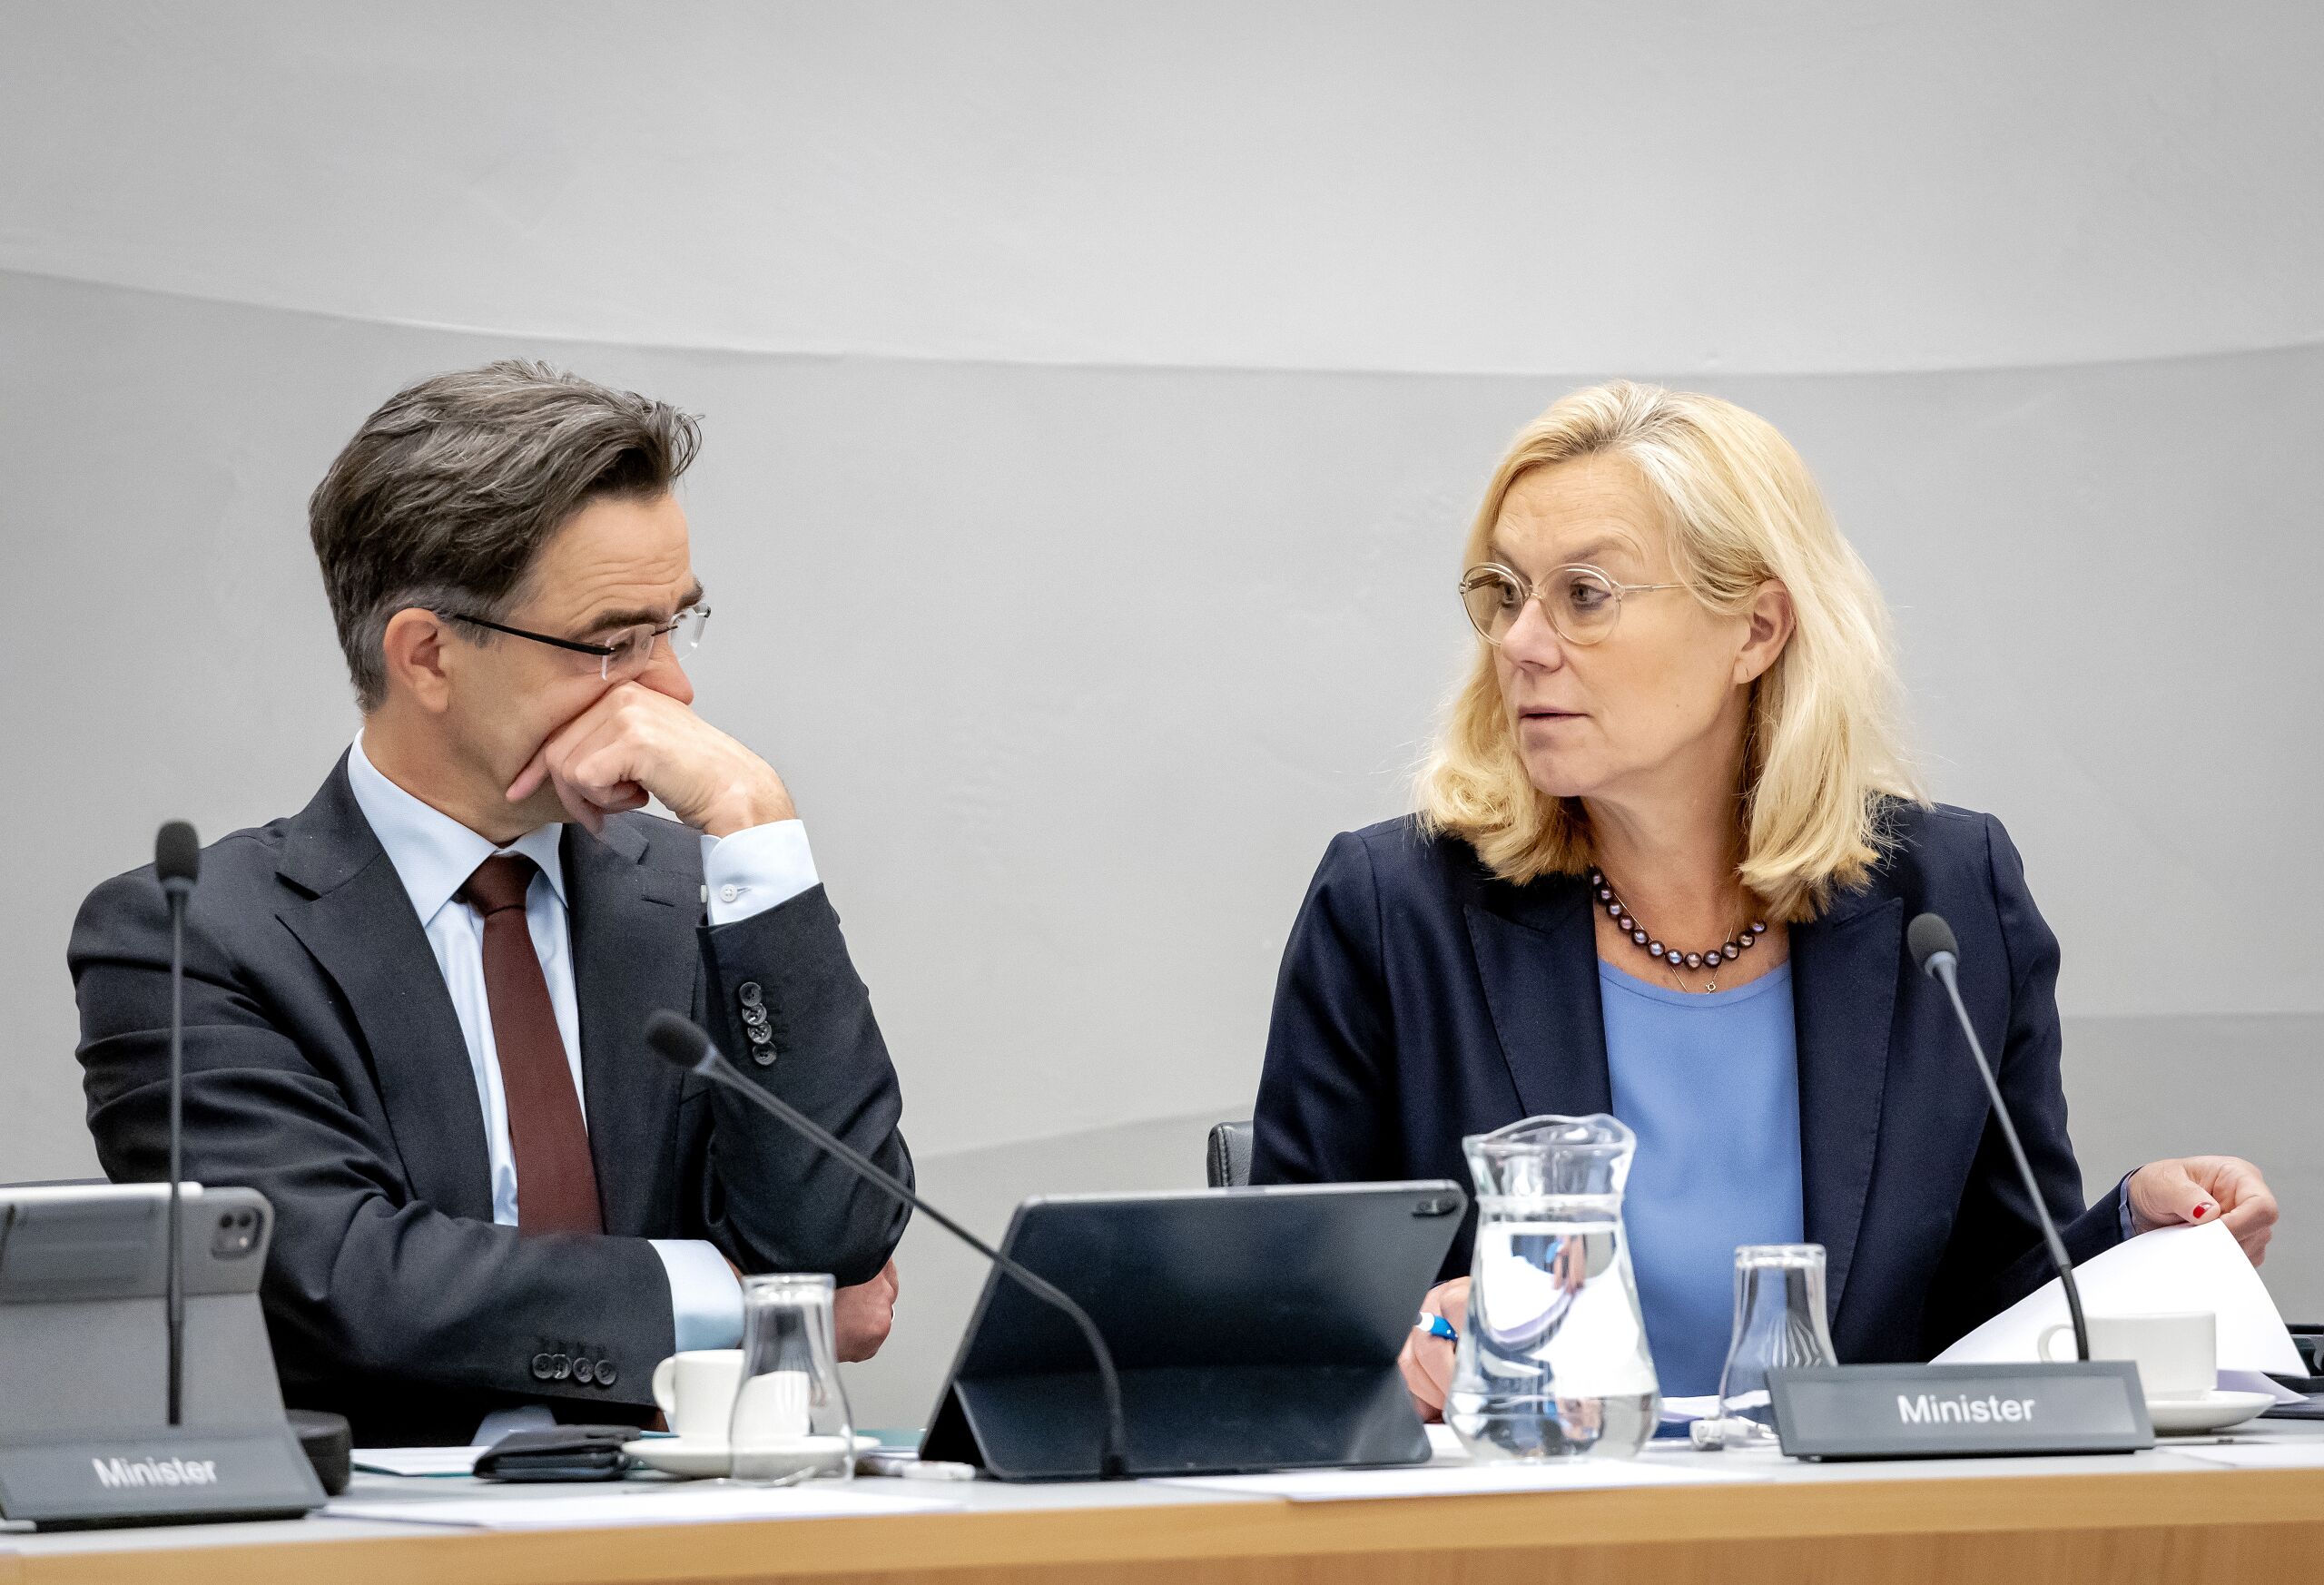 Minister Sigrid Kaag van Financiën tijdens van een wetgevingsoverleg met de Tweede Kamer commissie over de aankoop van nieuwe aandelen Air France-KLM. 